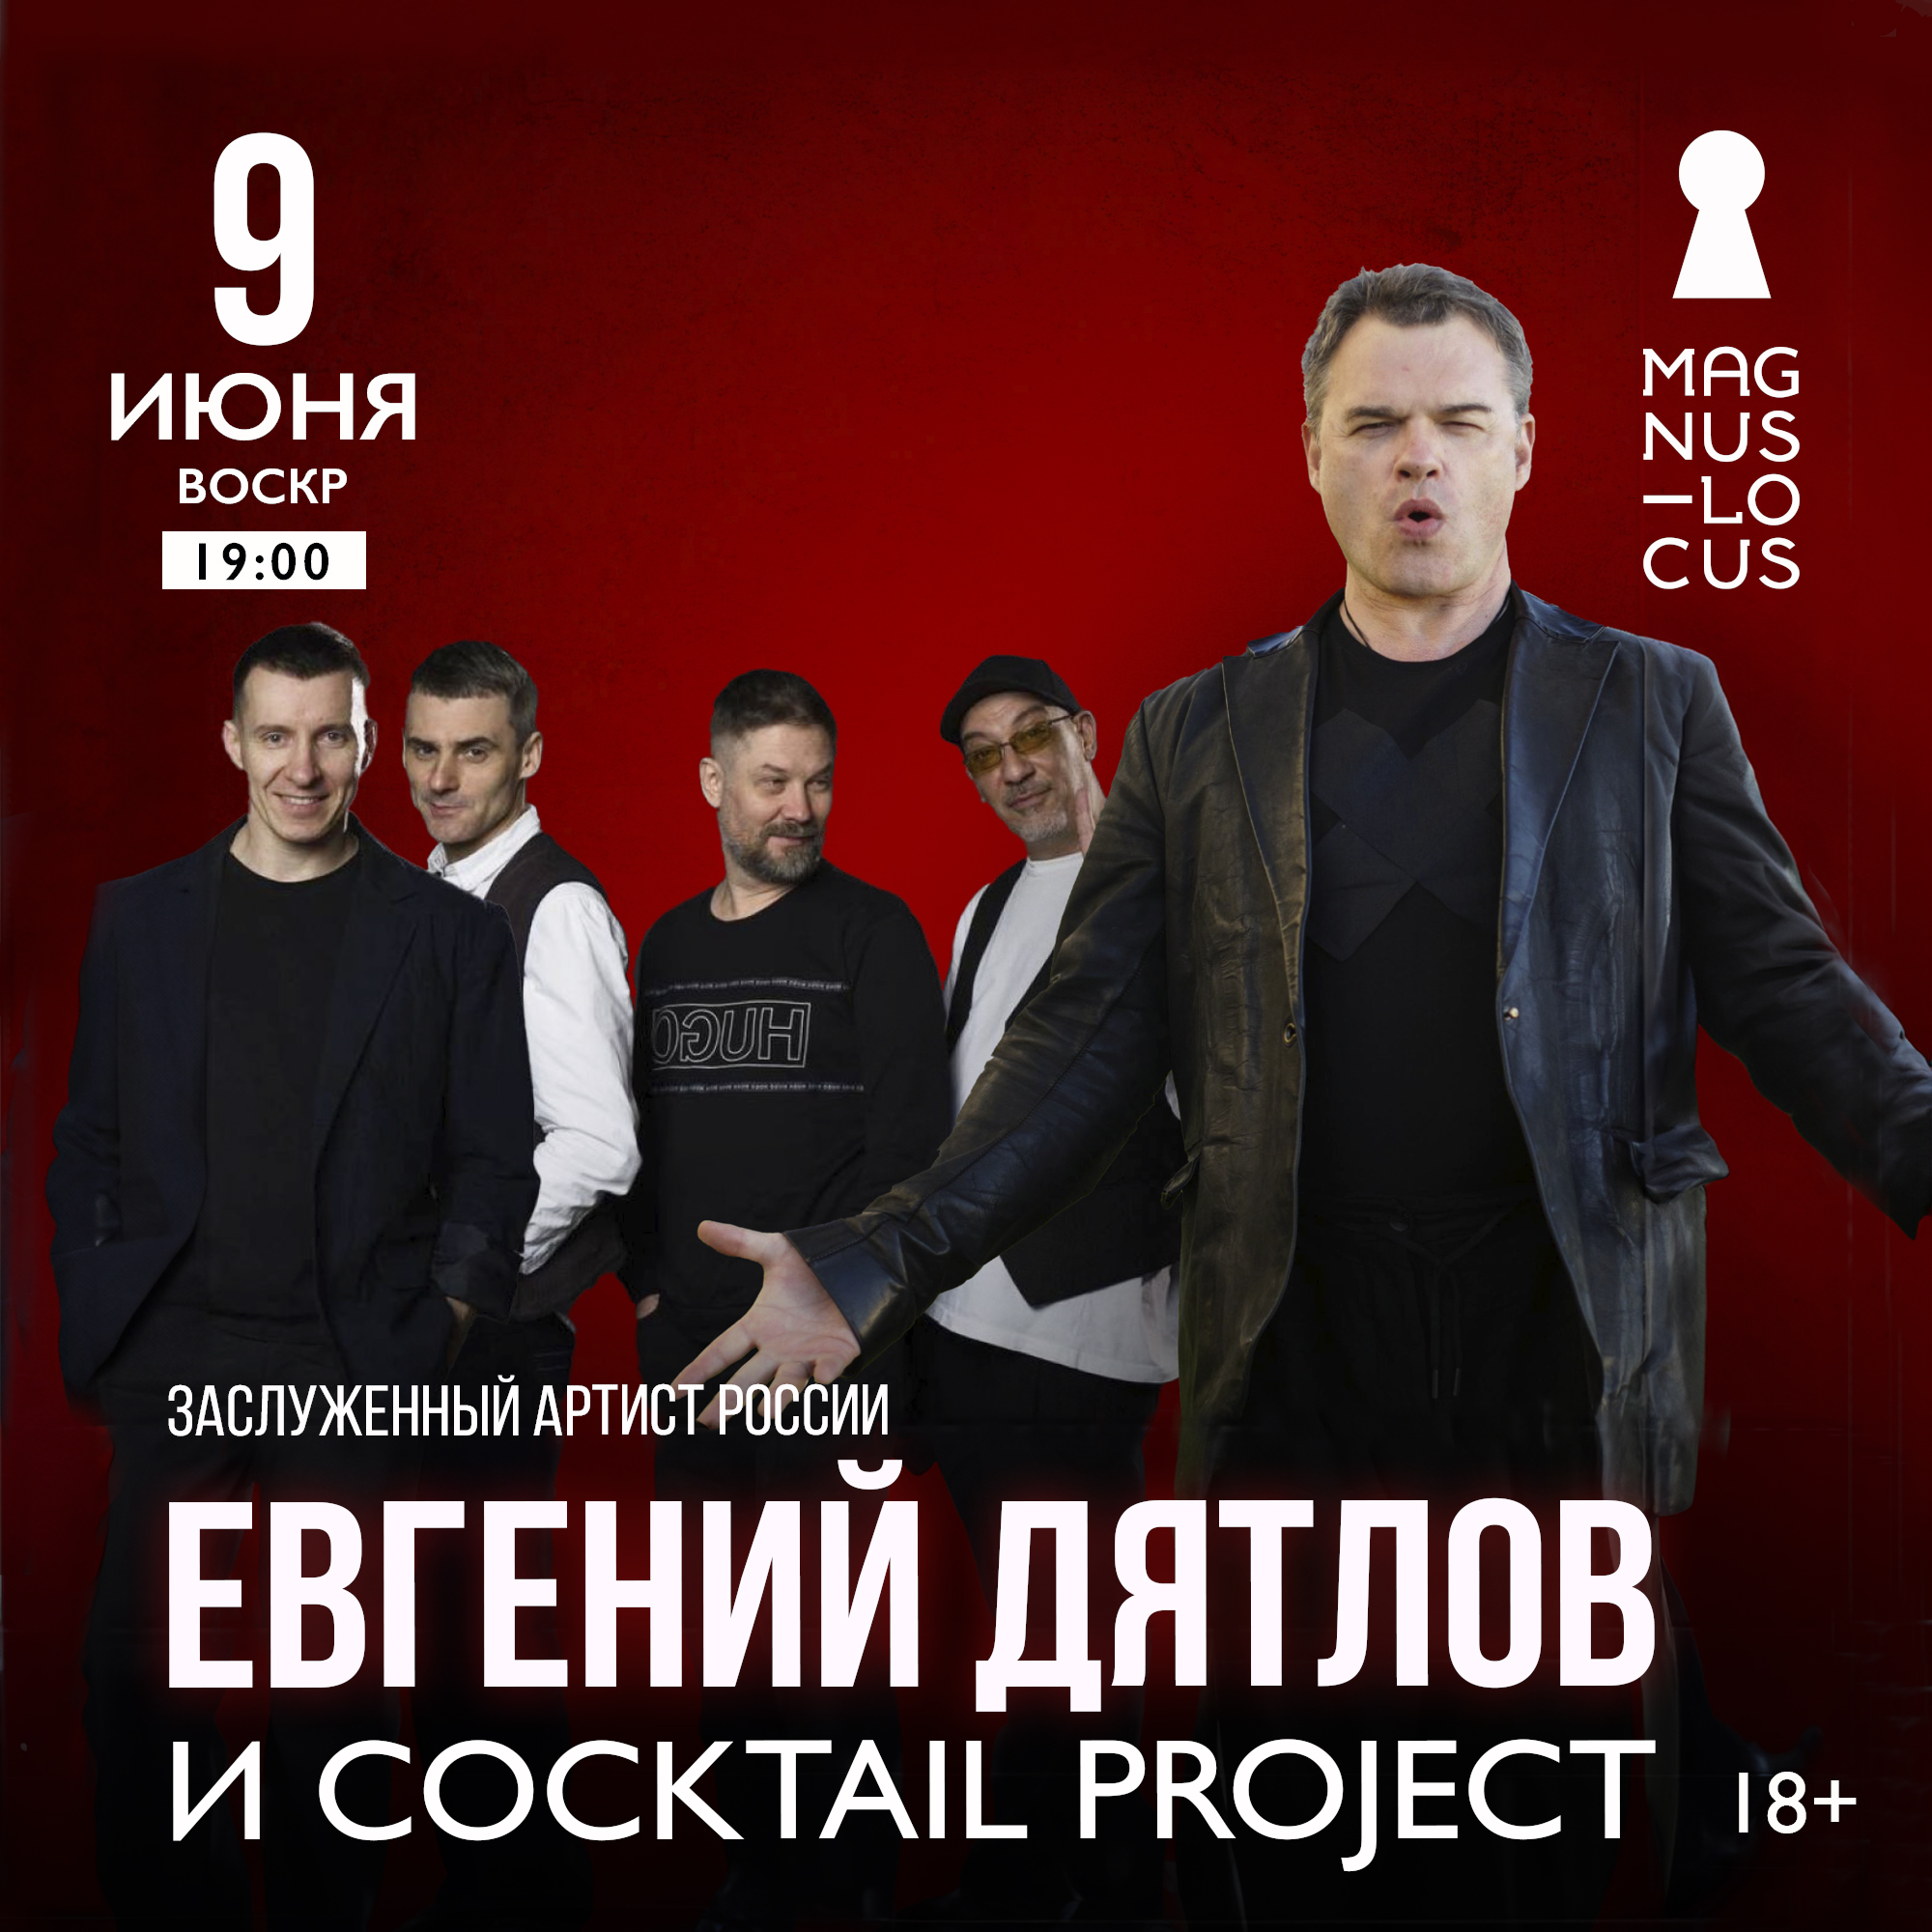 Заслуженный артист России ЕВГЕНИЙ ДЯТЛОВ и группа Cocktail Project